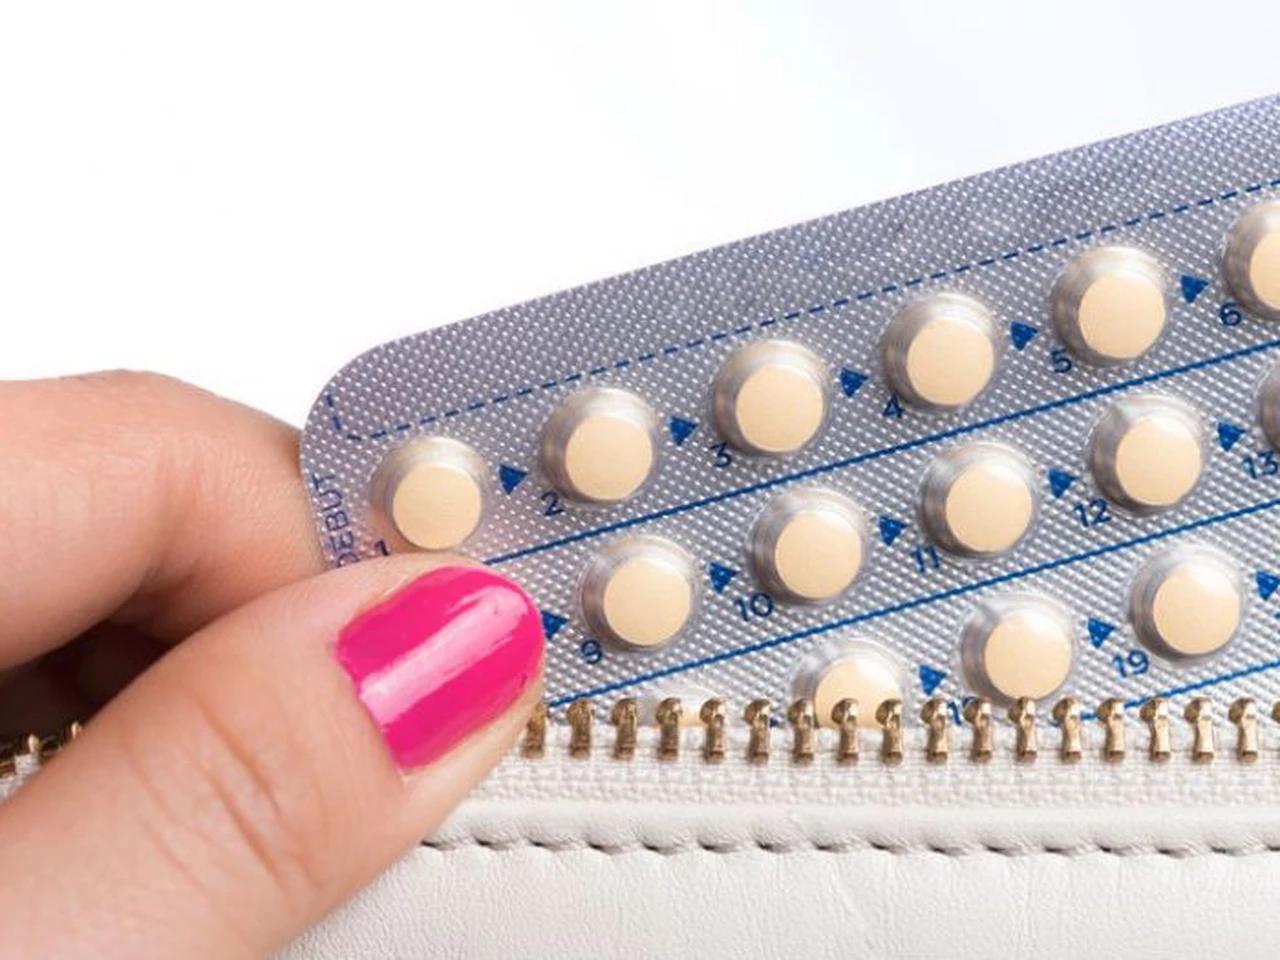 Sexo seguro: cómo conseguir pastillas anticonceptivas en forma gratuita